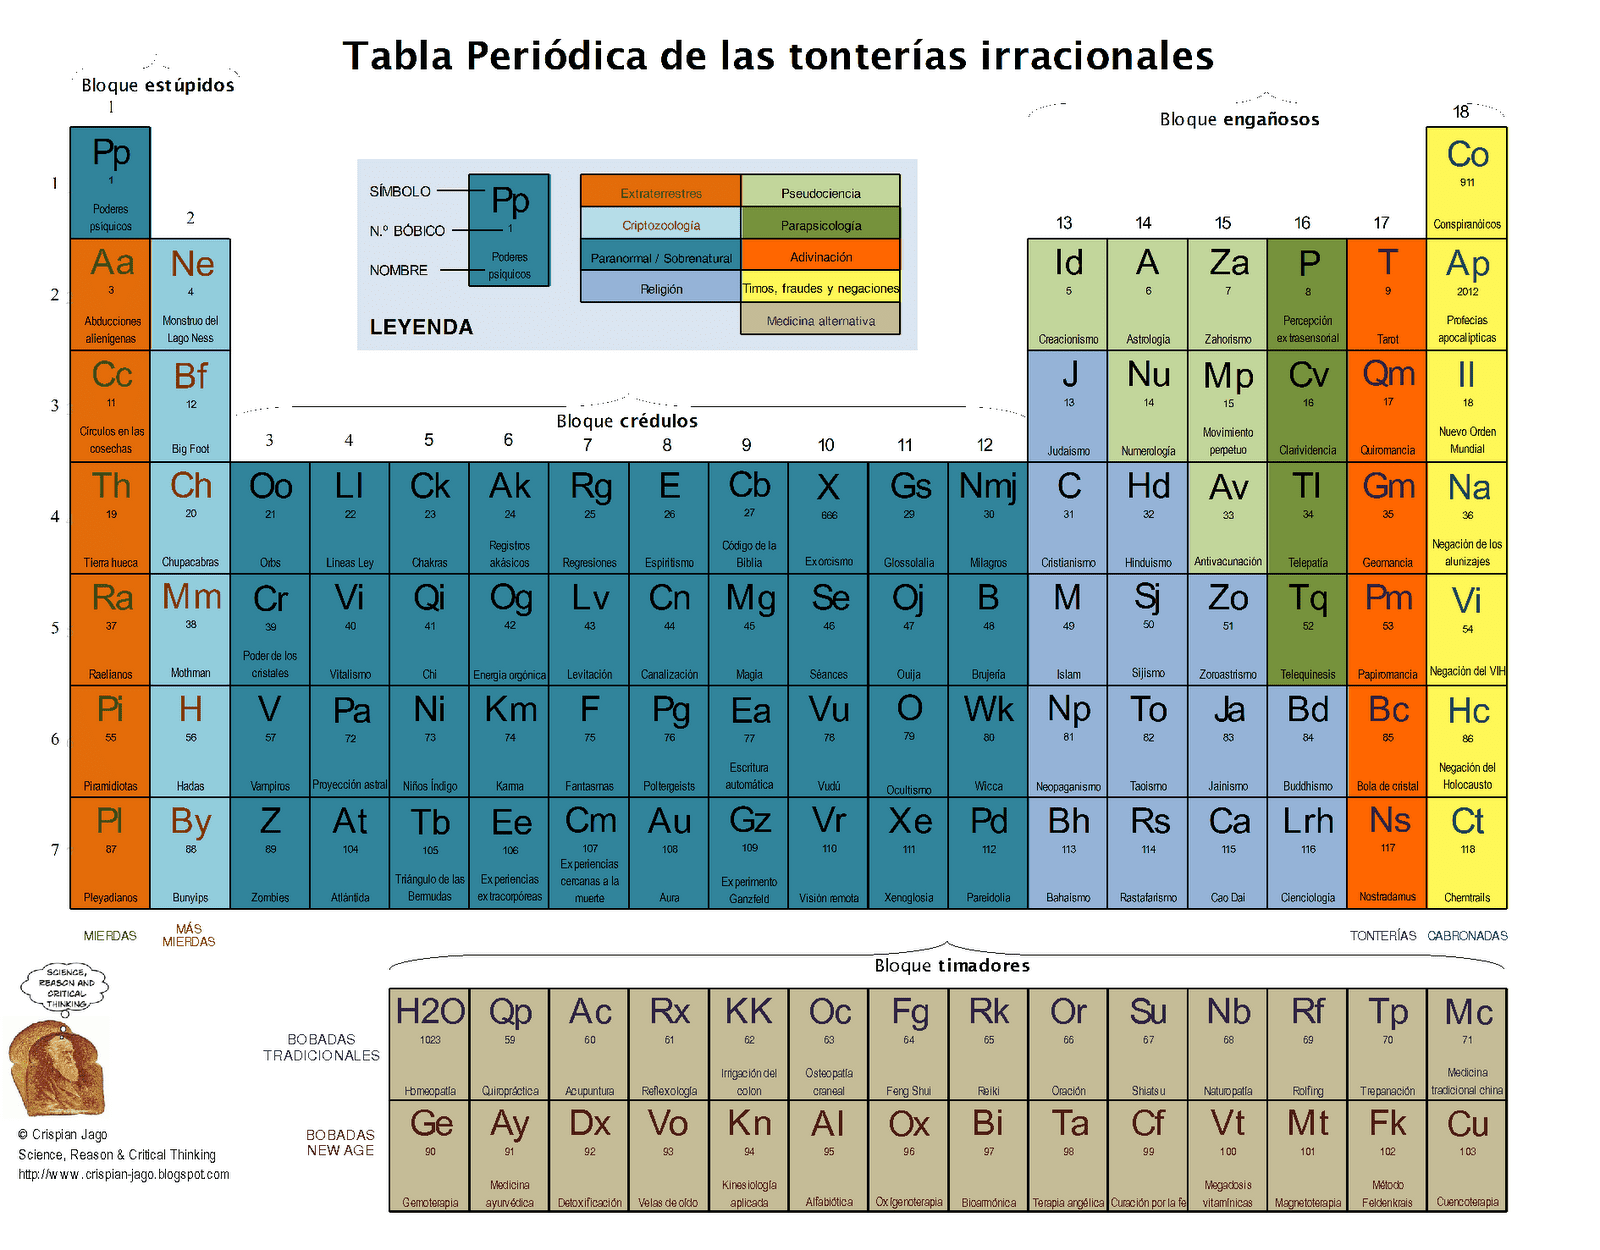 La tabla periódica de las tonterías irracionales, en español